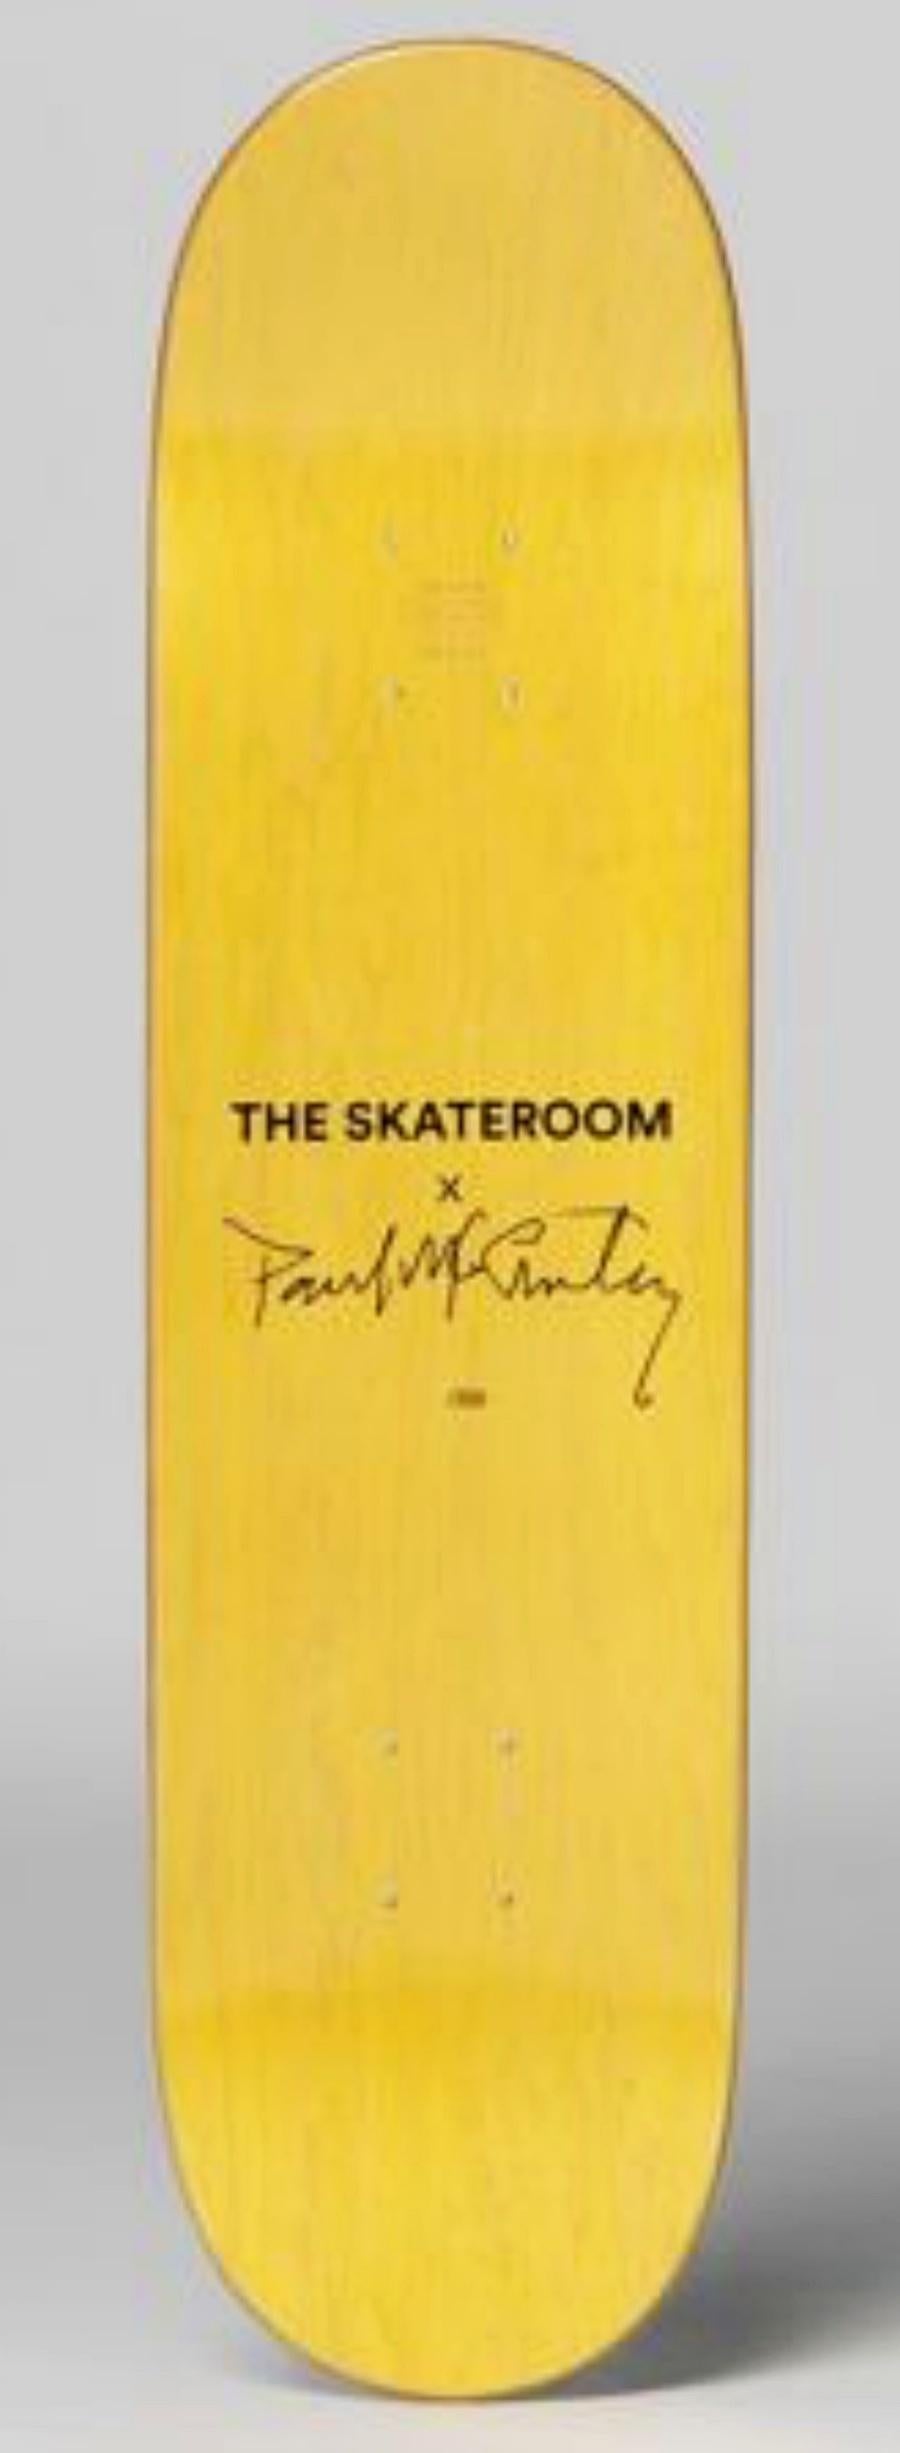 Poupée, édition limitée Skate Deck - Pop Art Print par Paul McCarthy